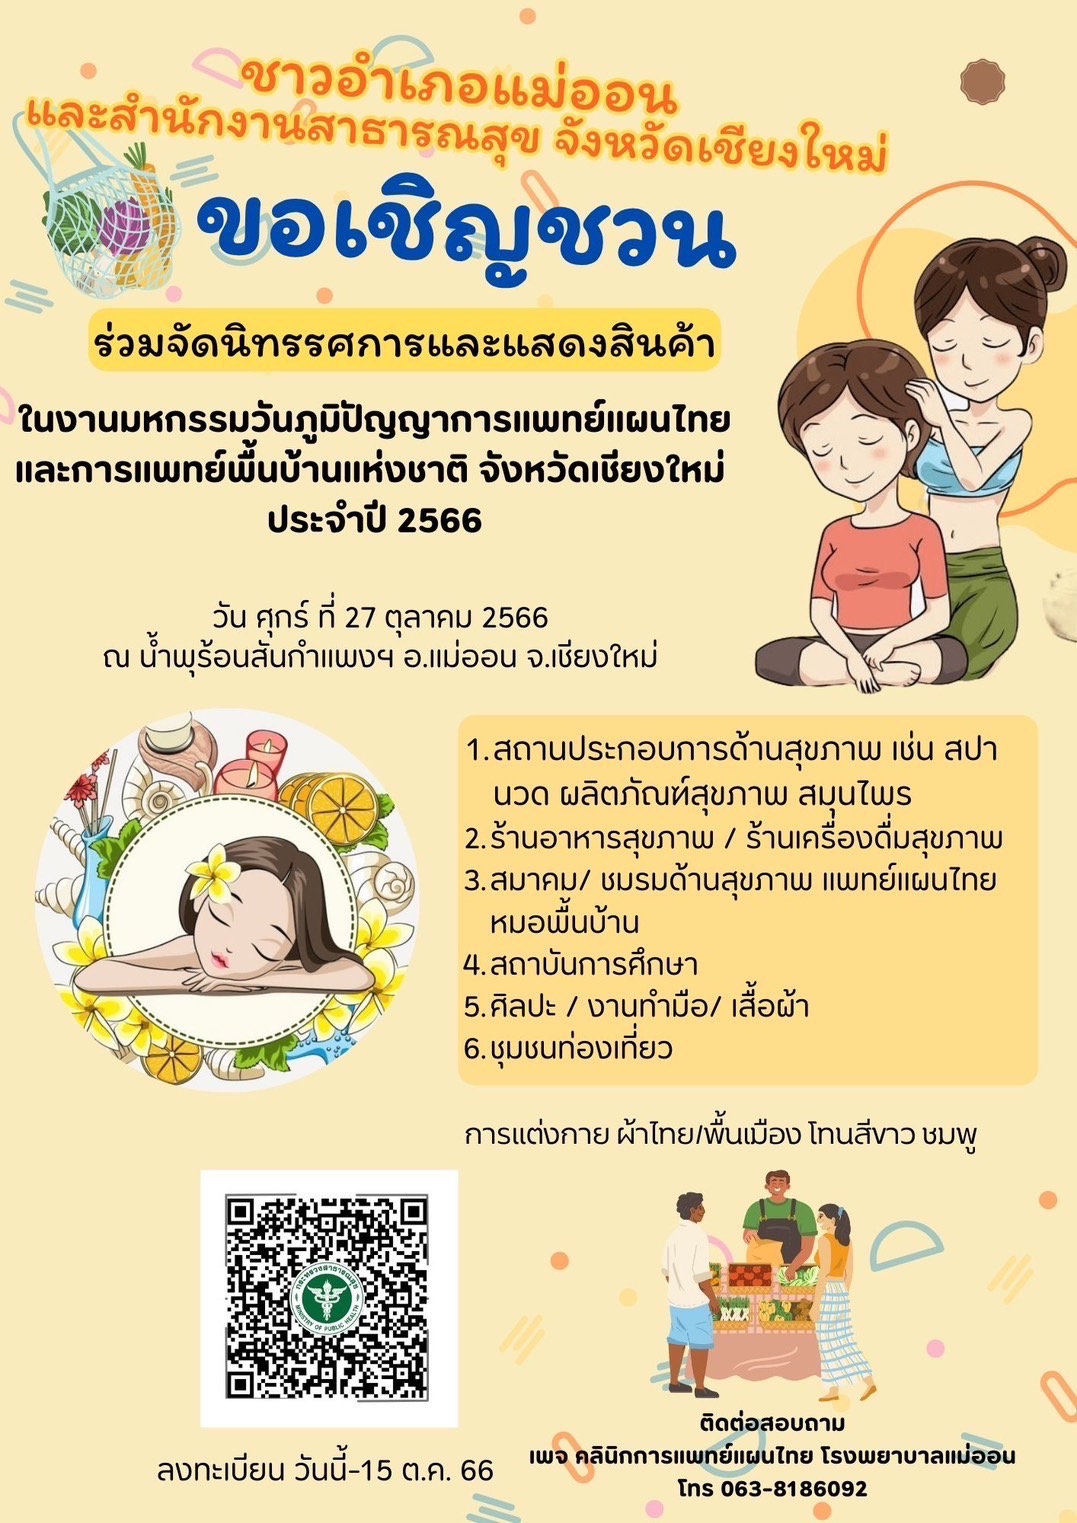 สสจ.เชียงใหม่ ขอเชิญร่วมงานมหกรรมภูมิปัญญาการแพทย์แผนไทยจังหวัดเชียงใหม่ และงานวันภูมิปัญญาการแพทย์แผนไทยแห่งชาติ ปี 2566